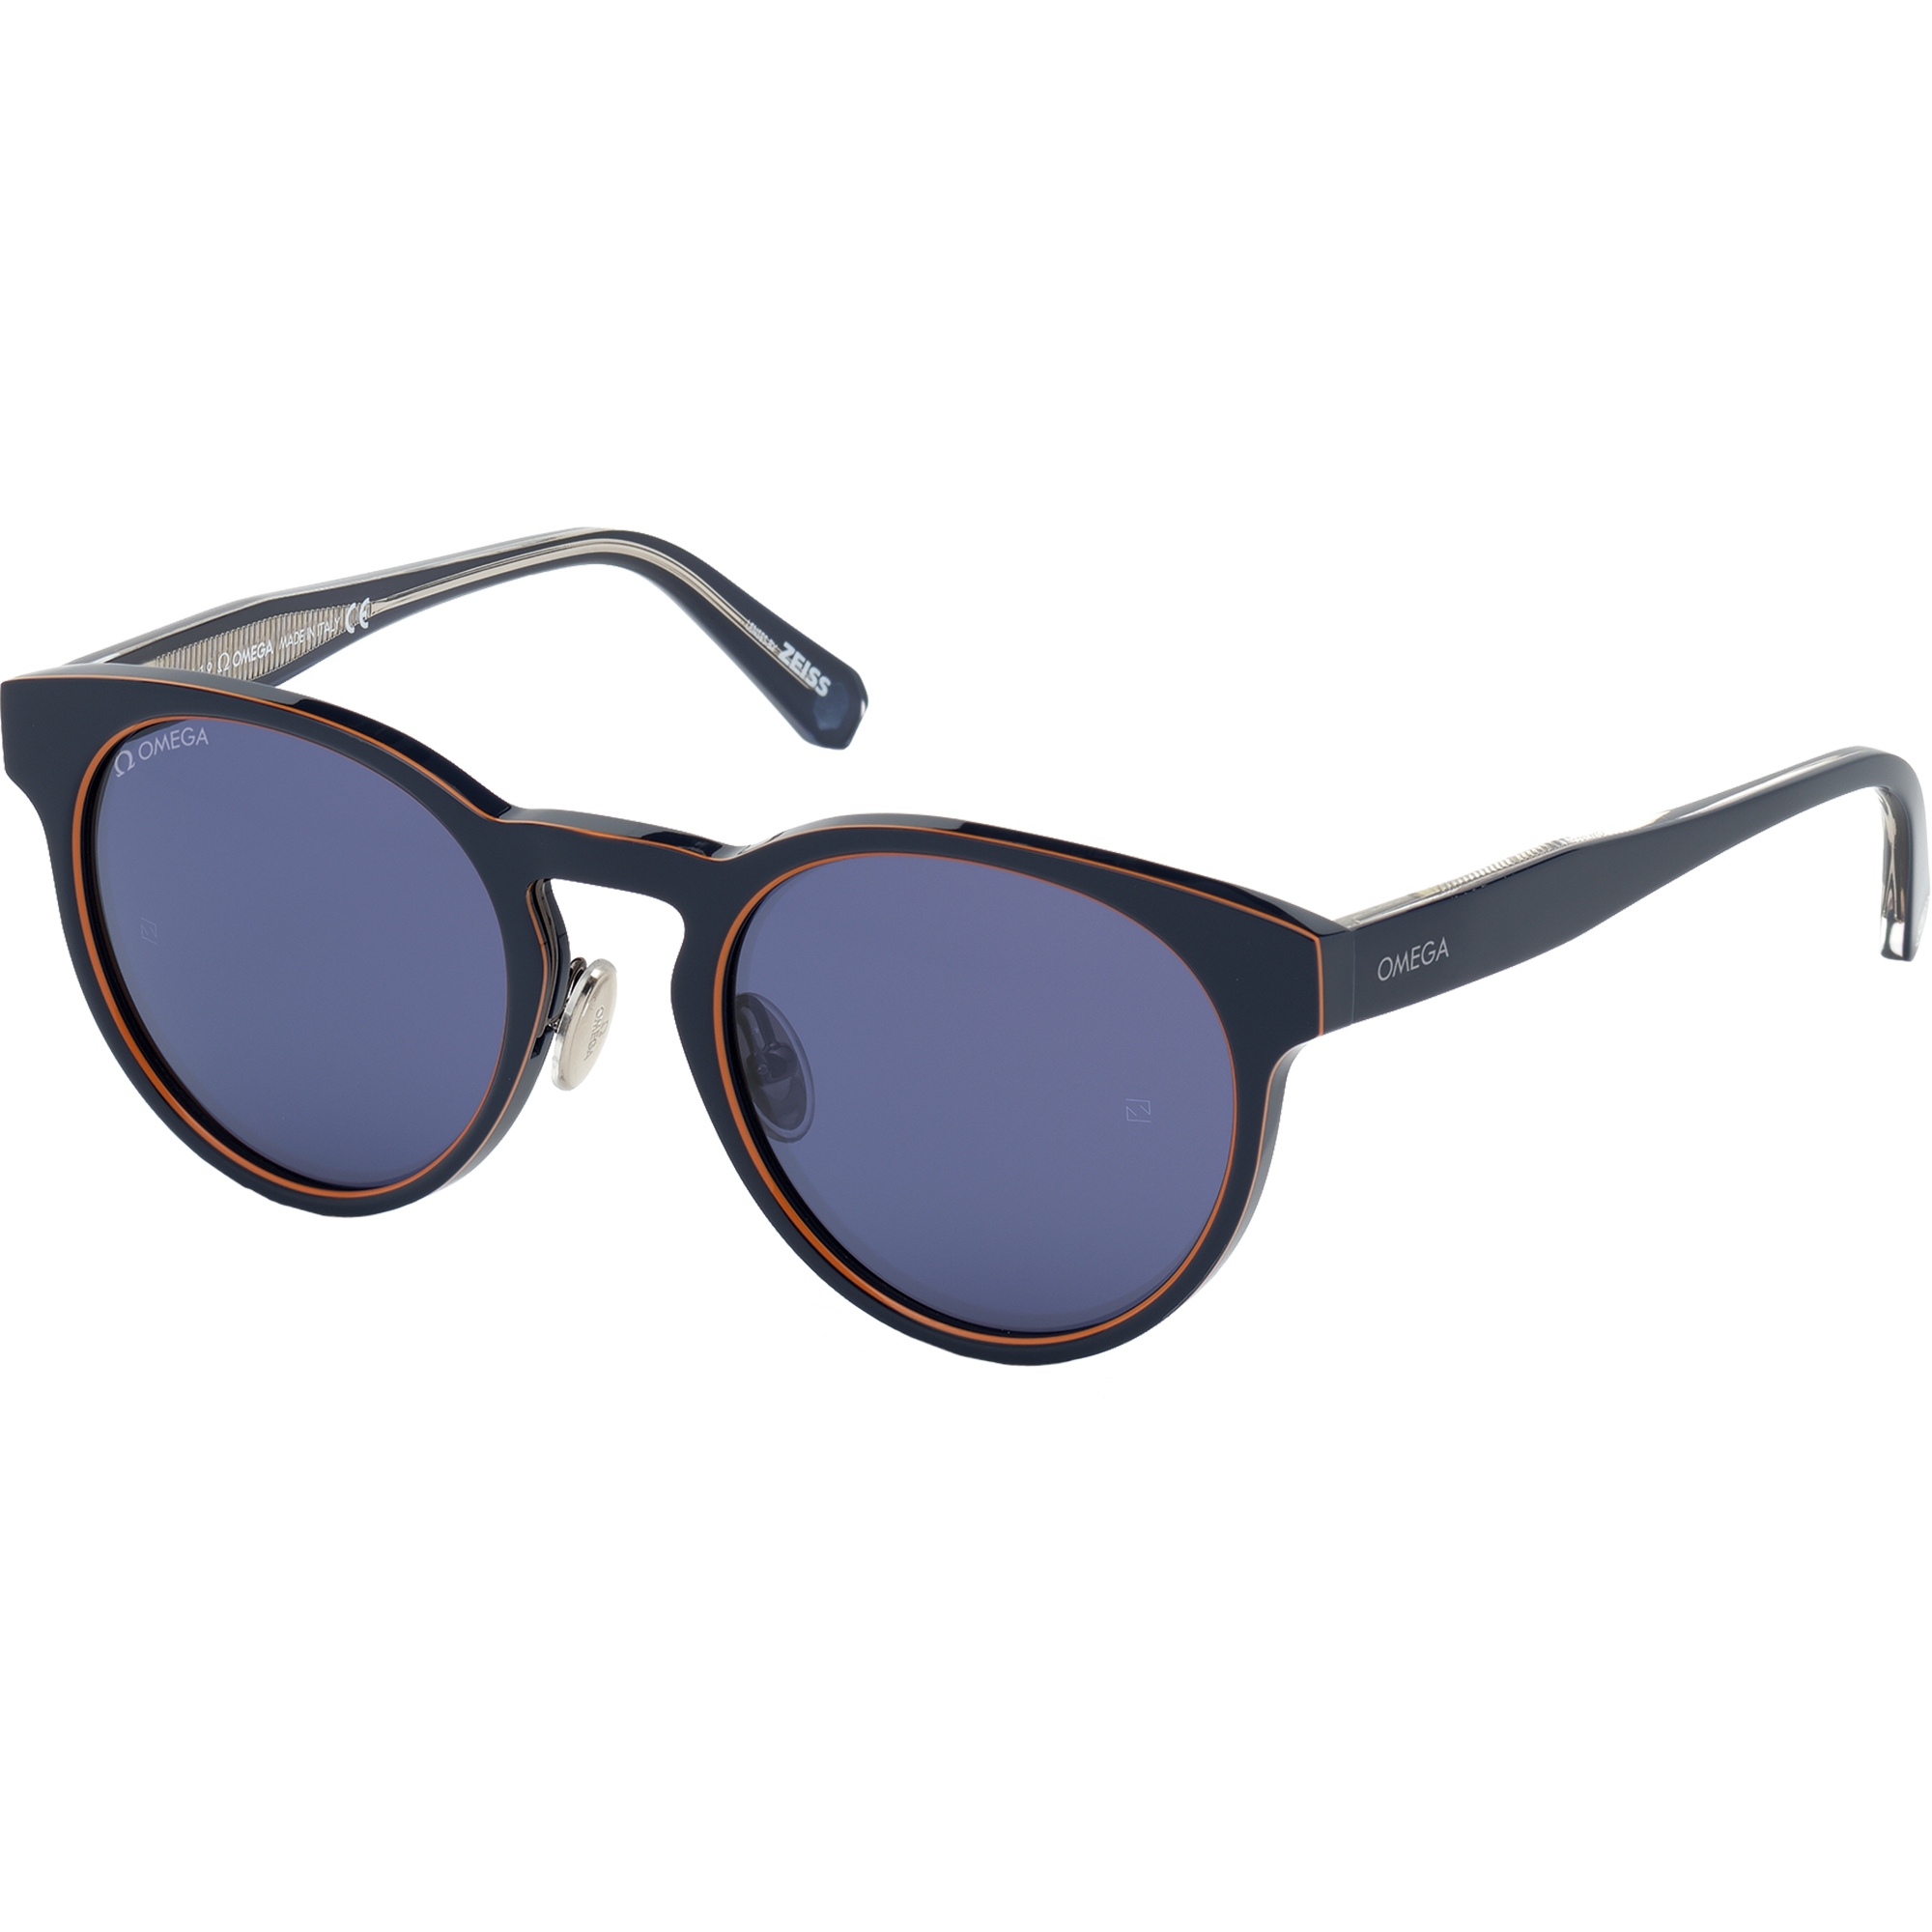 Солнцезащитные очки - Круглая форма, ОЧКИ ДЛЯ МУЖЧИН И ЖЕНЩИН - OM0020-H5290V